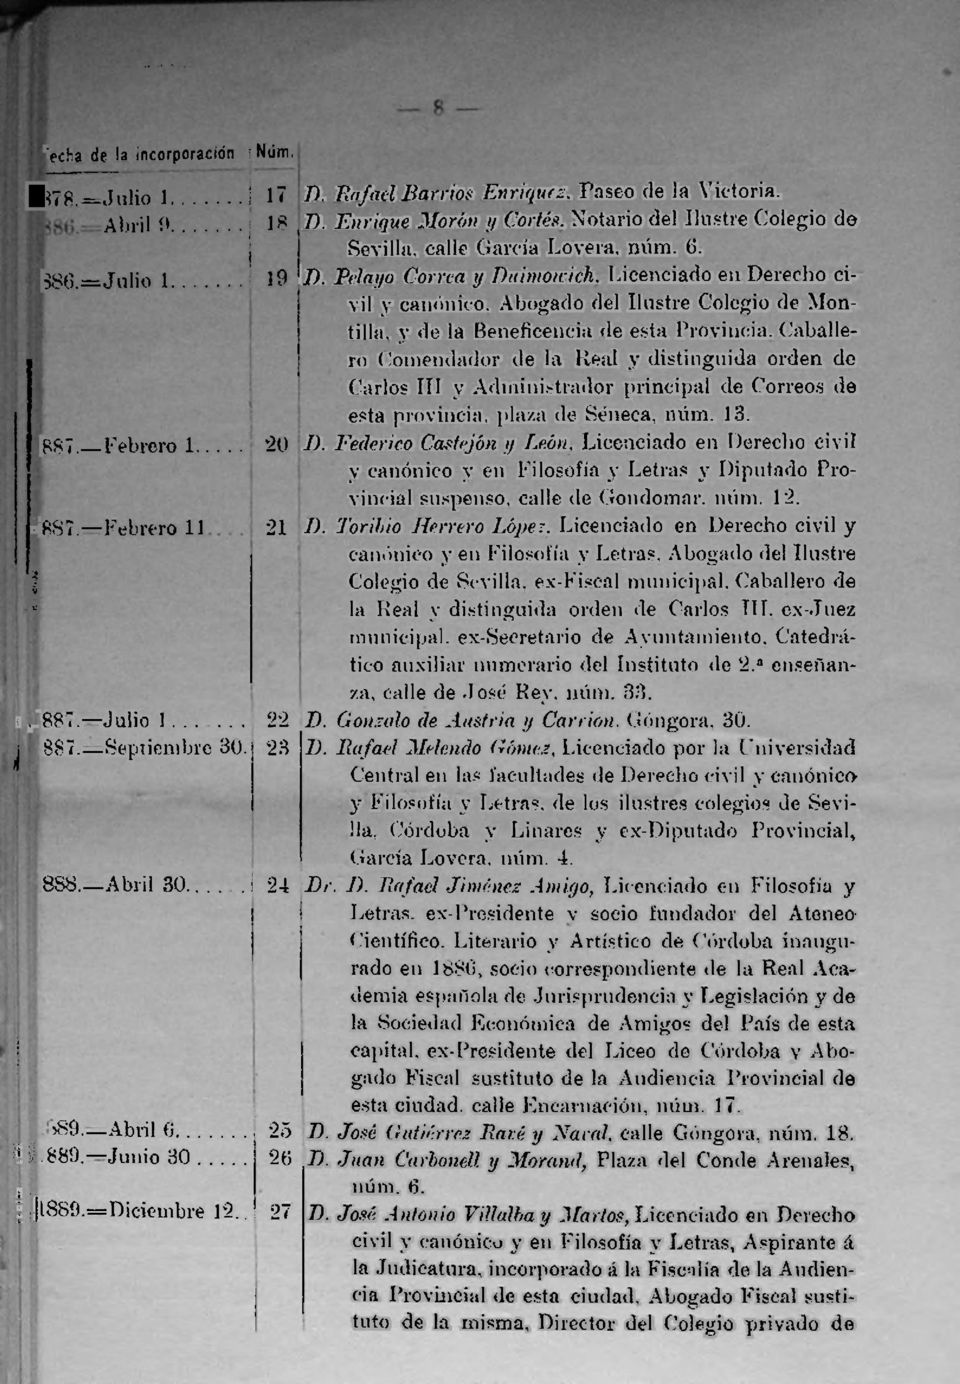 (5. I). Pelayo Correa y Duimowich, Licenciado en Derecho civil y canónico, Abogado del Ilustre Colegio de Montilla, y de la Beneficencia de esta Provincia.